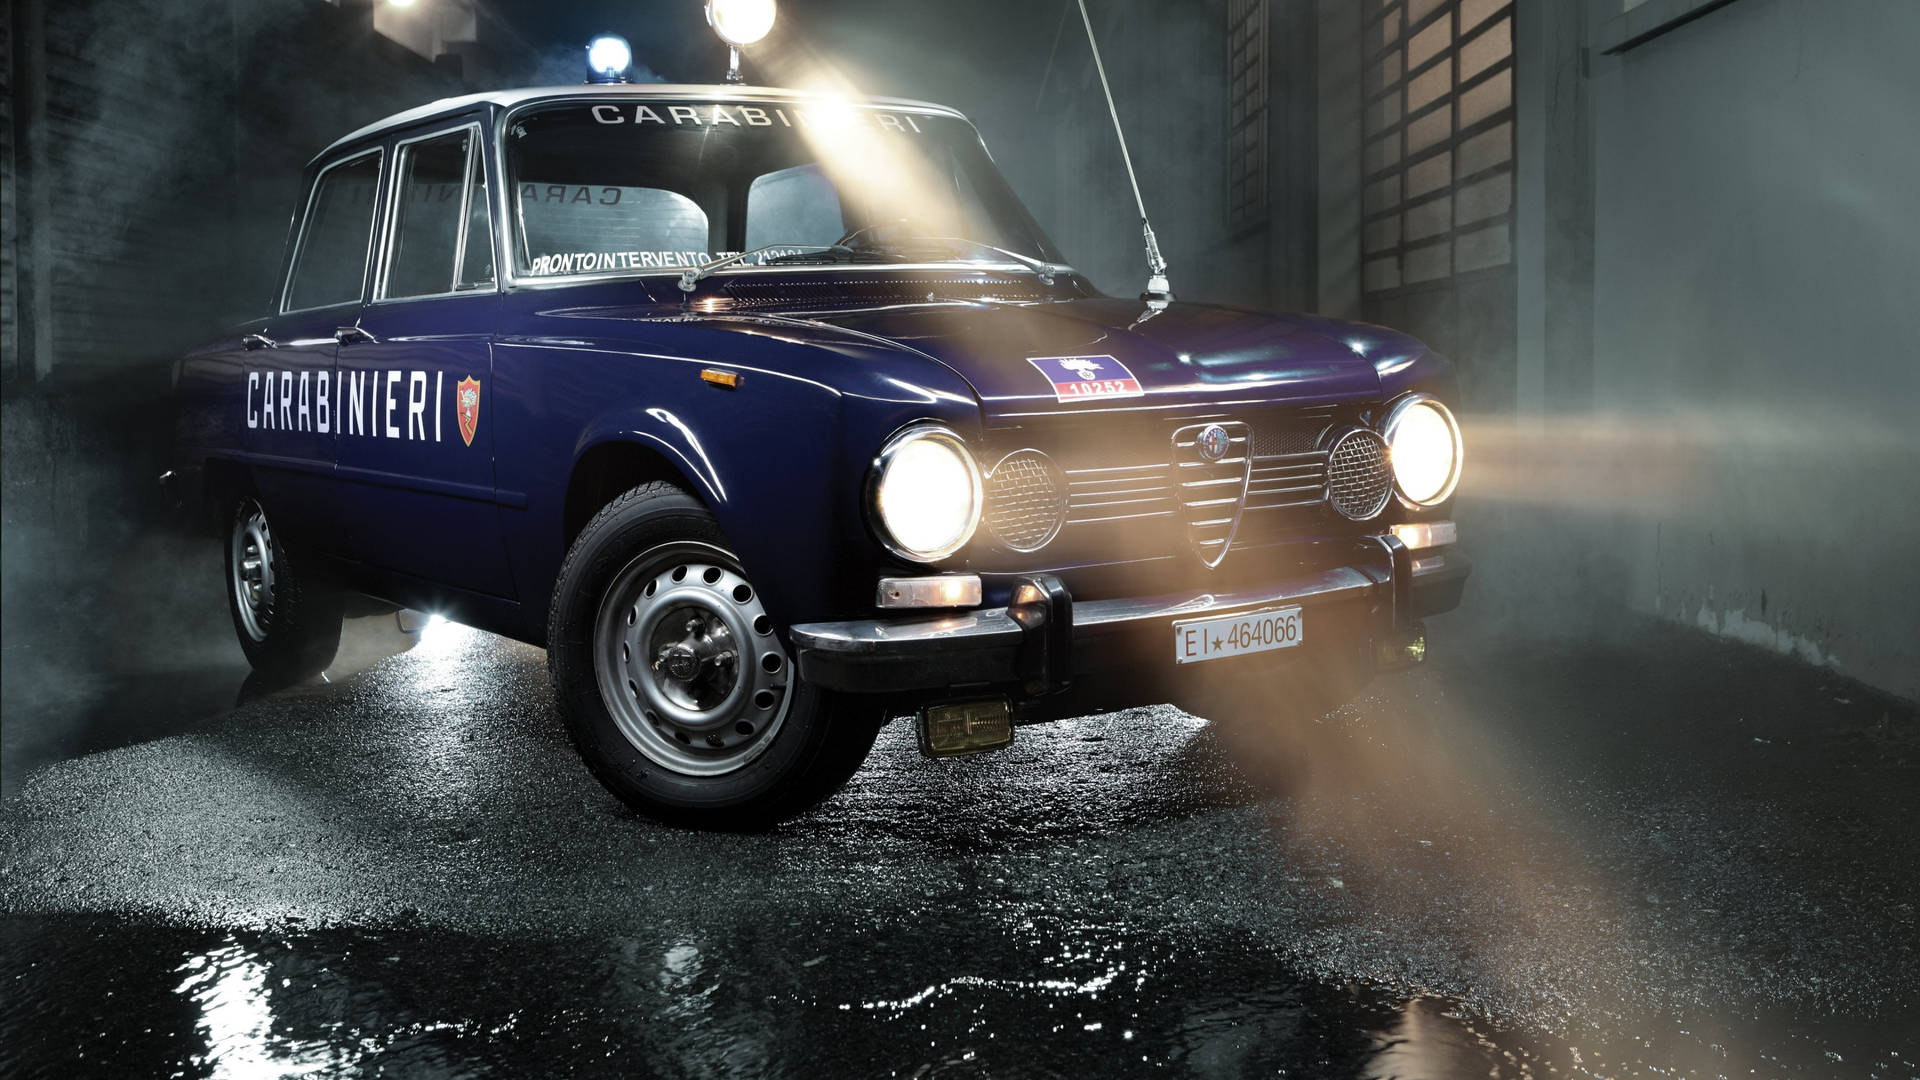 Classic blue Alfa Romeo Giulia car for Carabiniere police wallpaper.